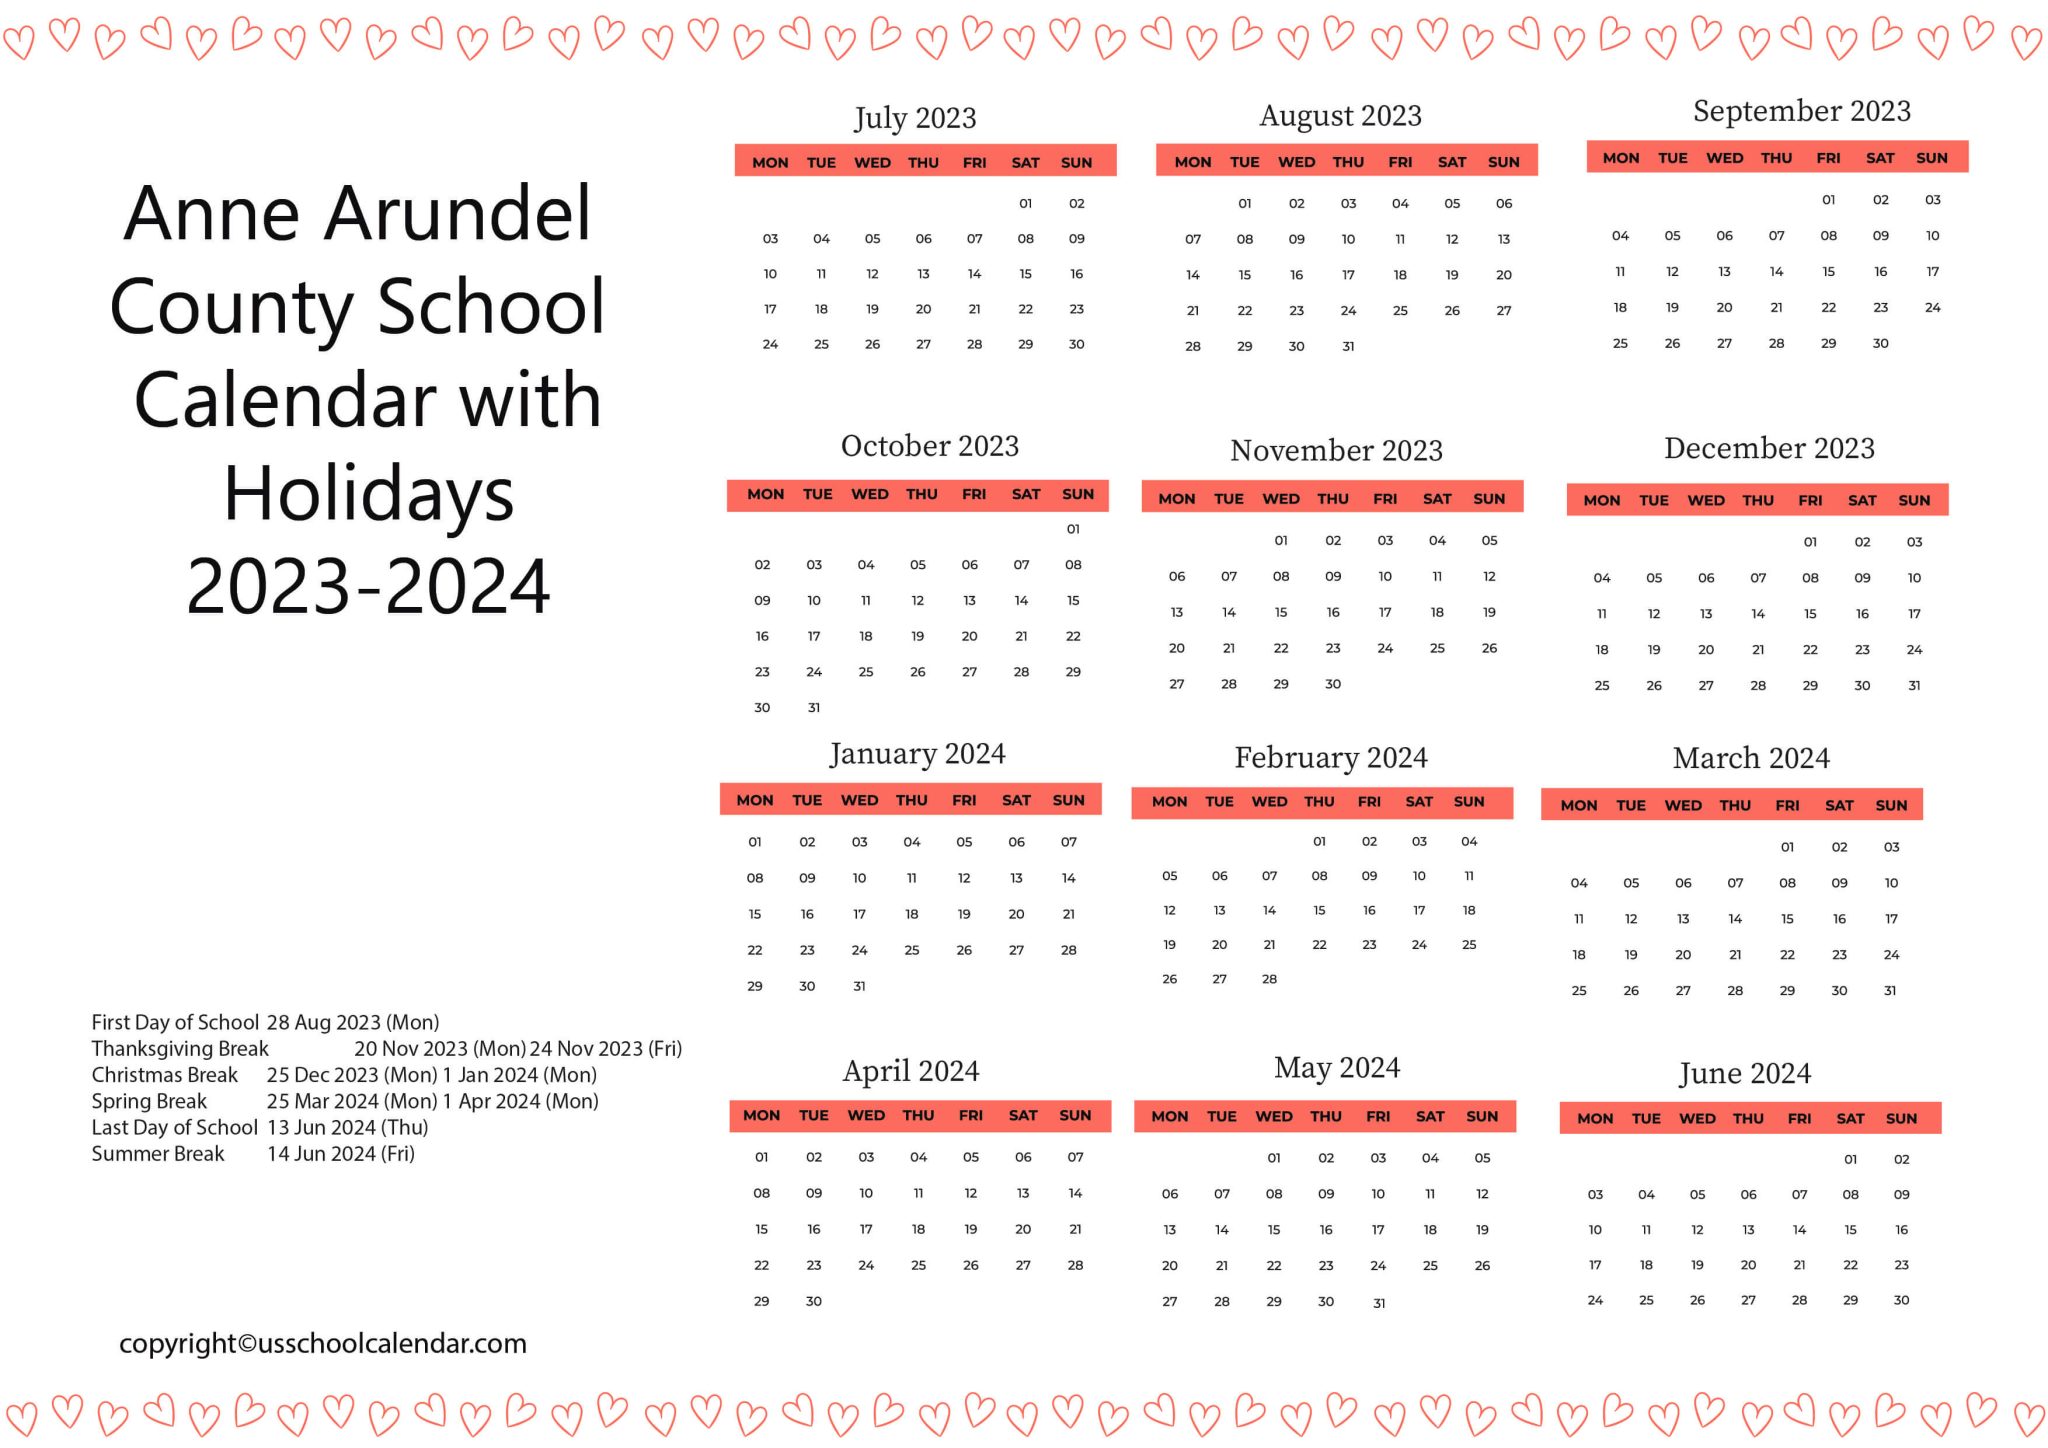 Anne Arundel County School Calendar with Holidays 2023-2024